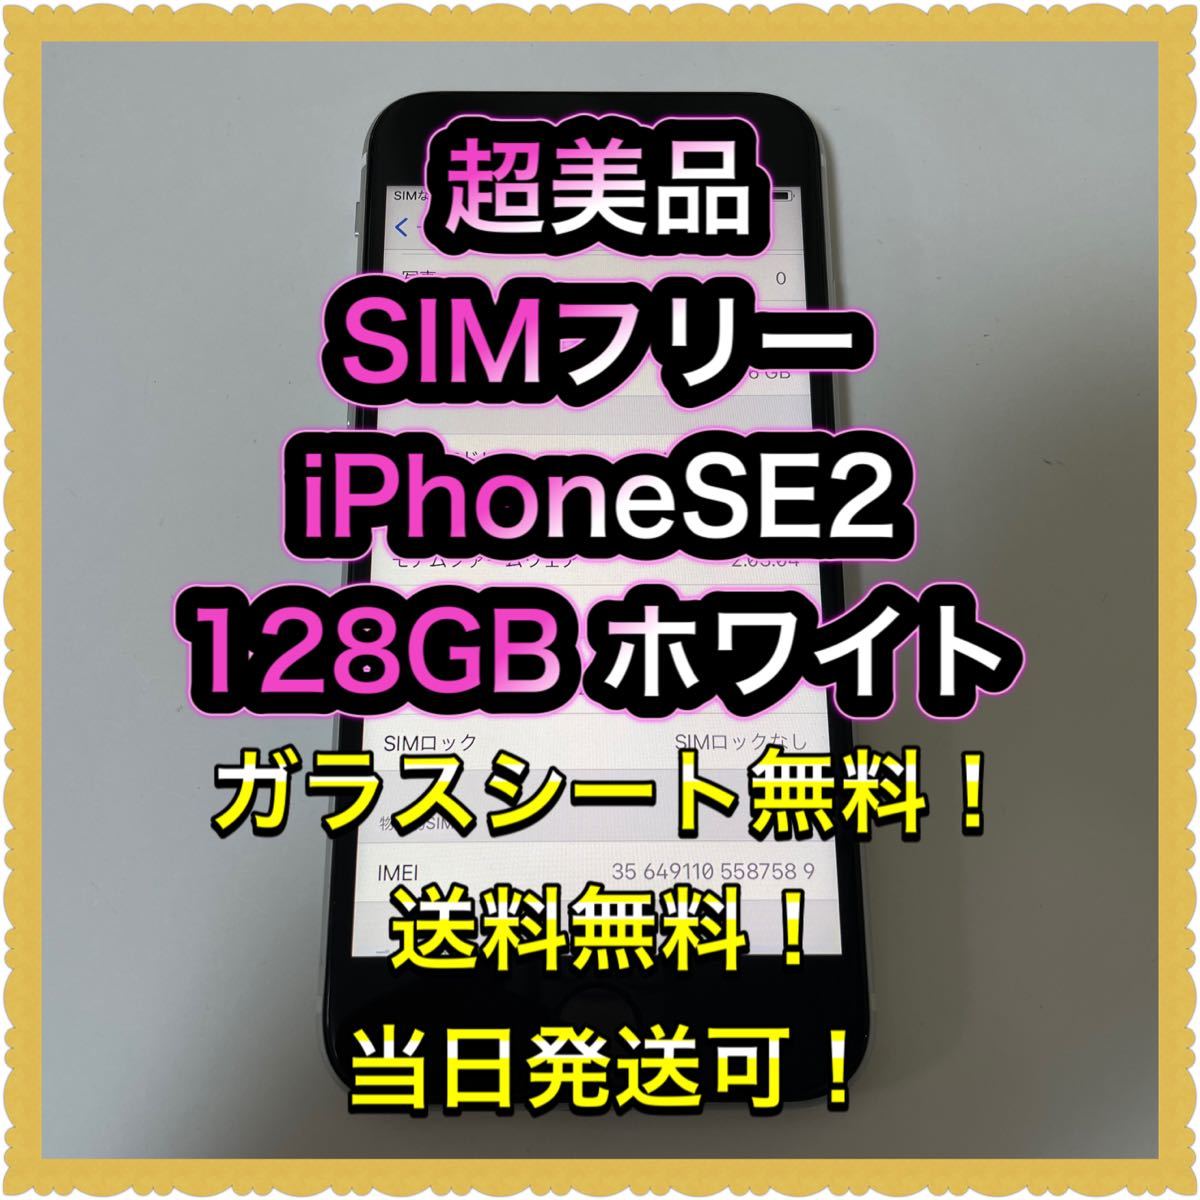 円高還元 超美品SIMフリーiPhoneSE2 残債なし ホワイト 判定 128GB iPhone